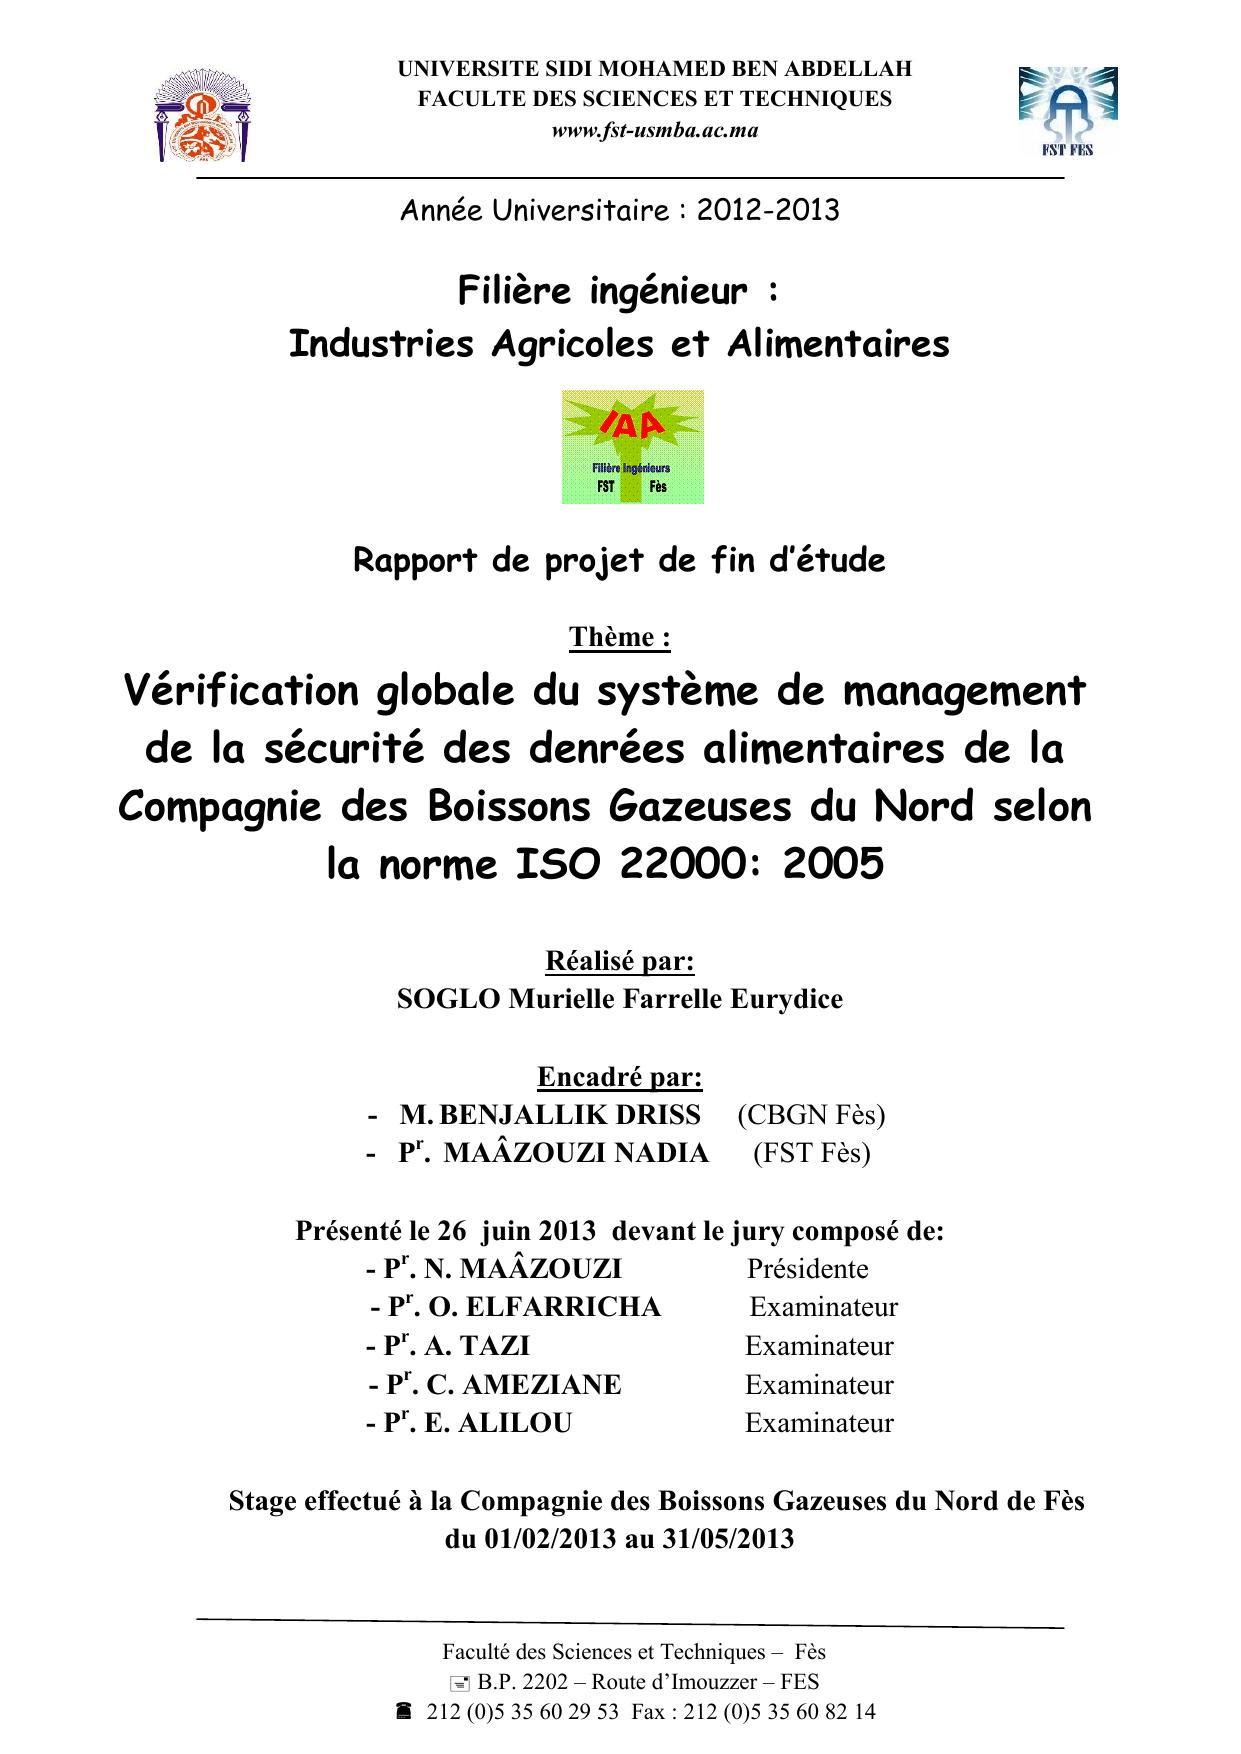 Vérification globale du système de management de la sécurité des denrées alimentaires de la Compagnie des Boissons Gazeuses du Nord selon la norme ISO 22000: 2005